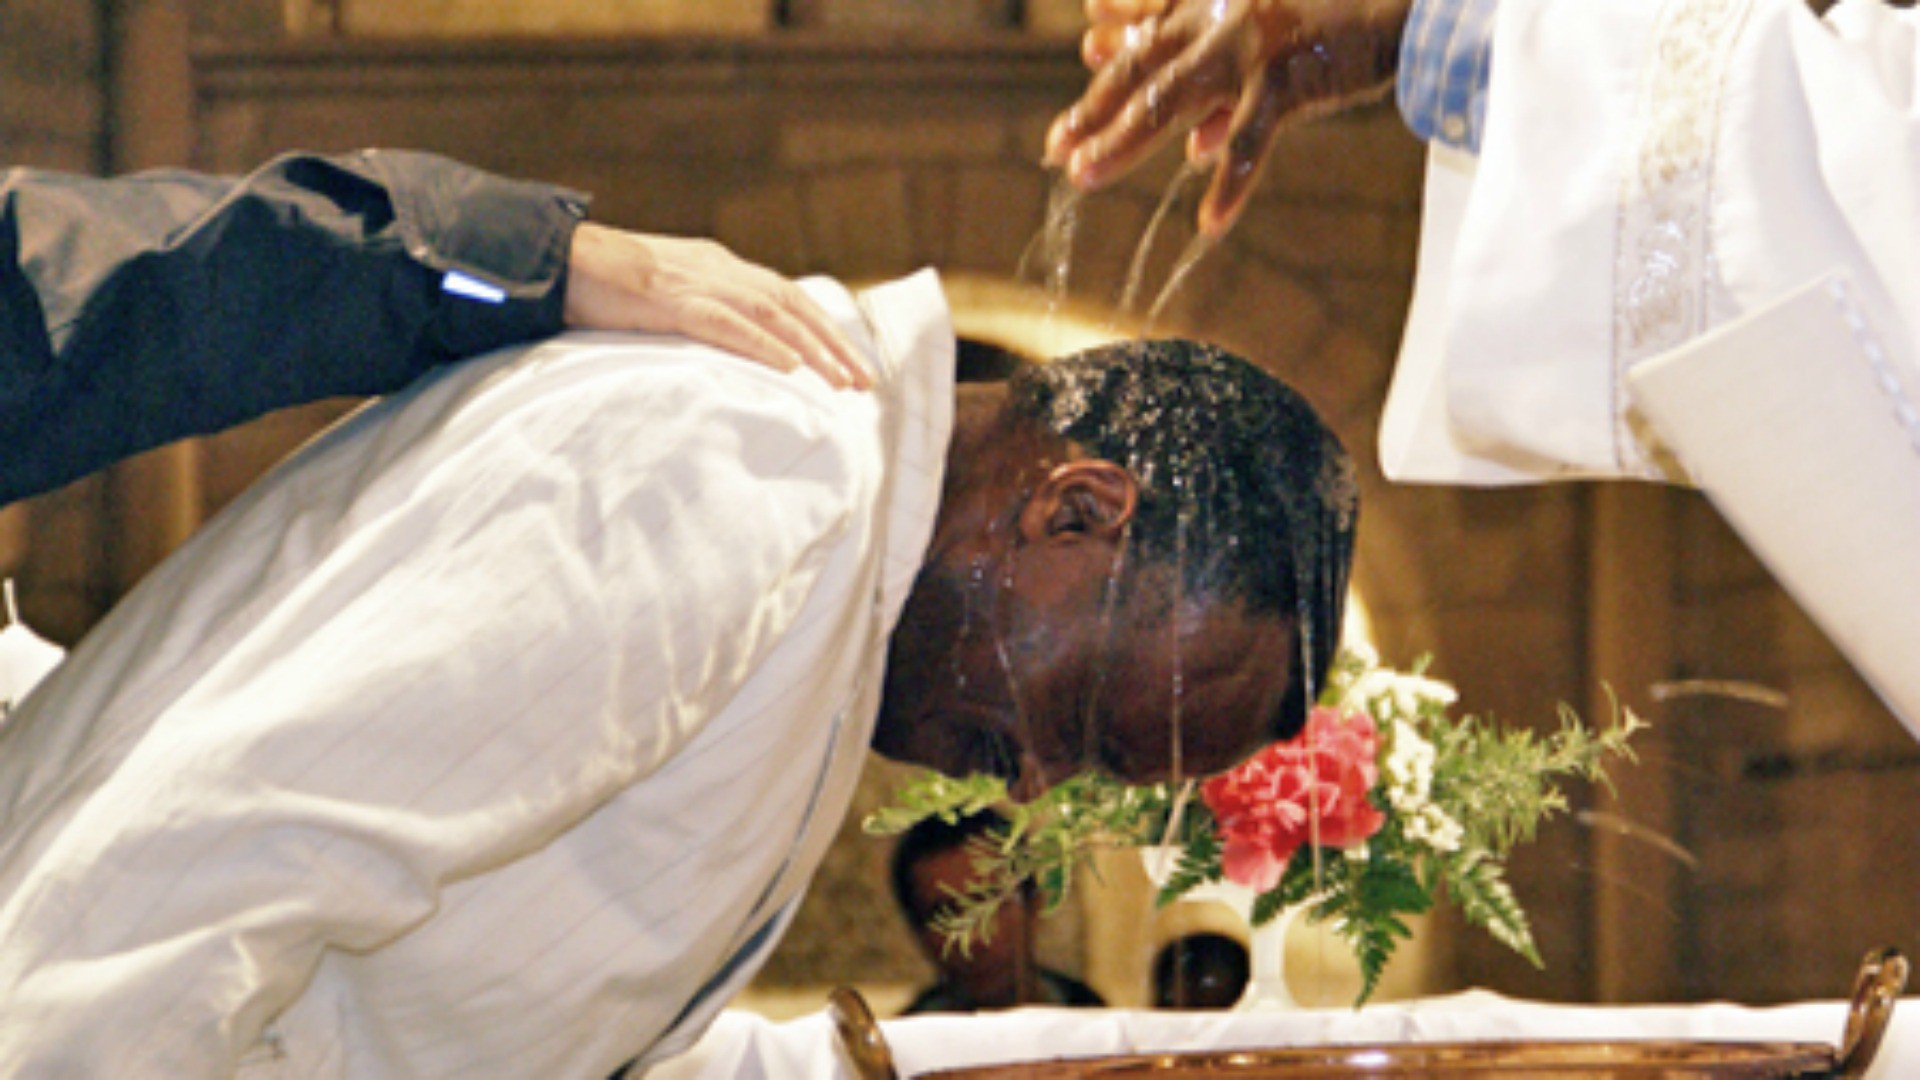 Baptême d'adulte à Poissy, en France (Image: http://paroisse-poissy-78.catholique.fr)